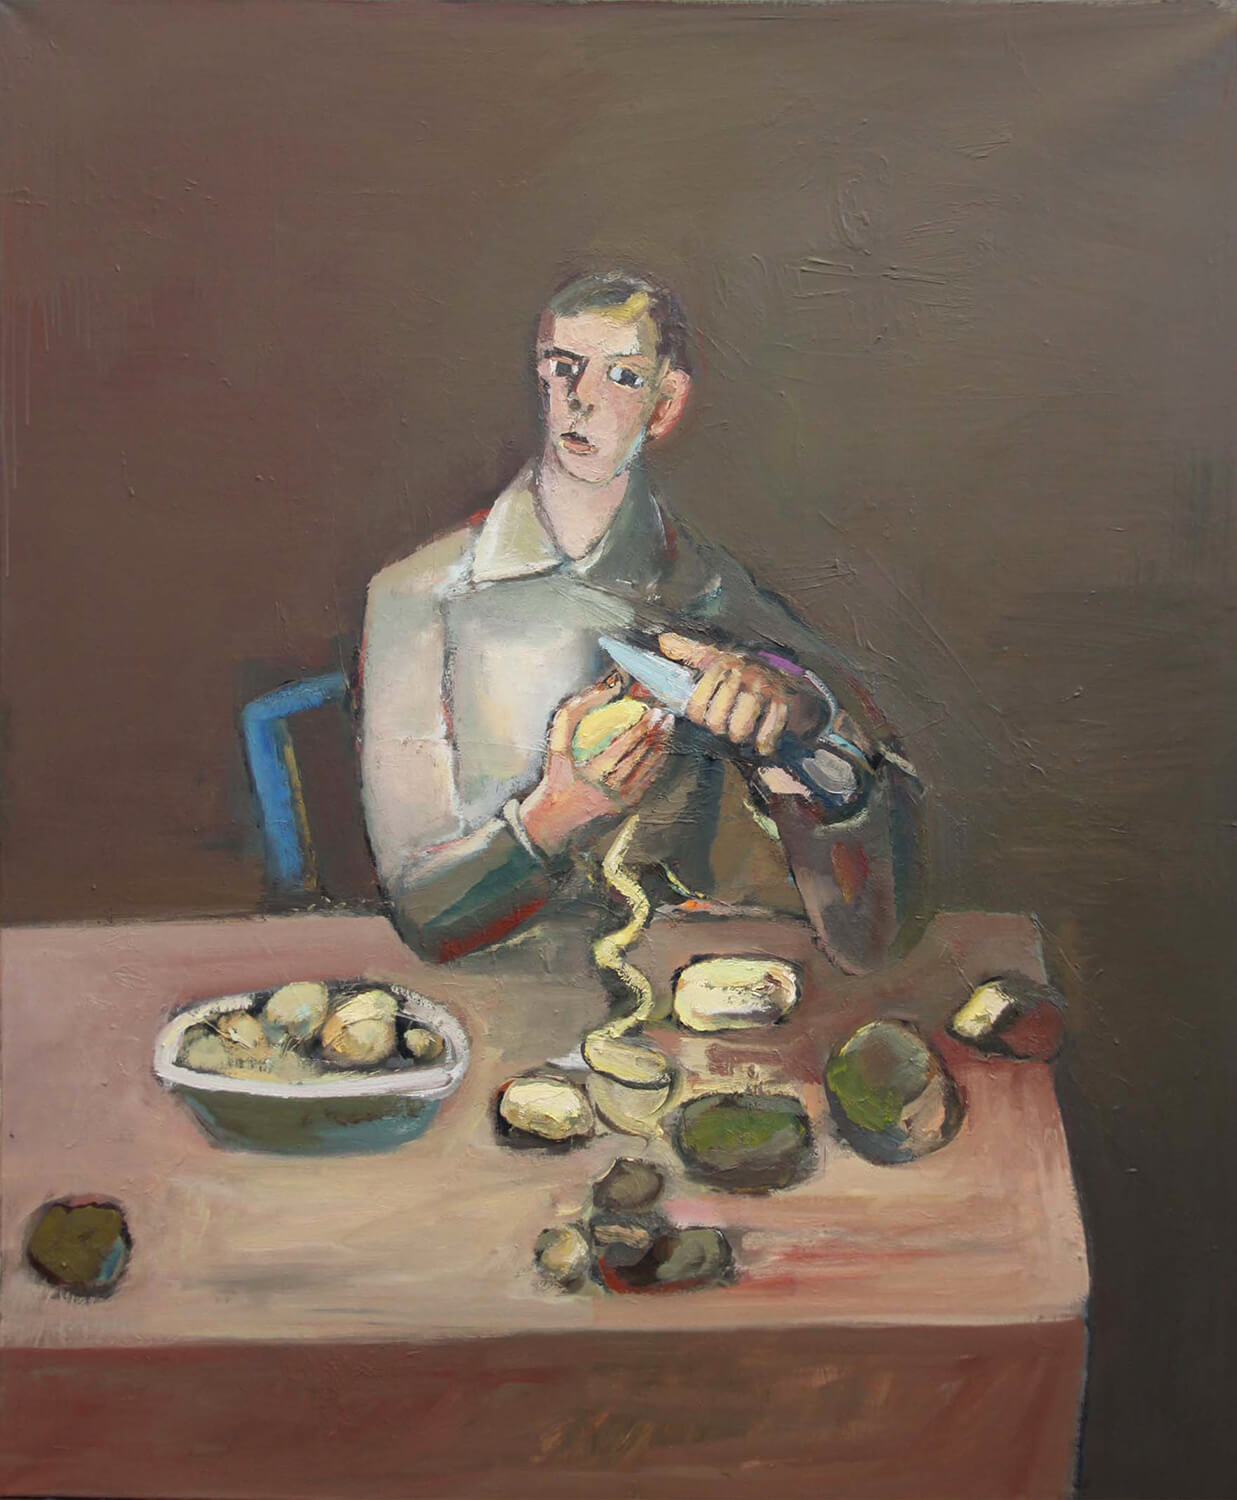 Ralf Kerbach, The Potato Peeler, 2011, oil on canvas, 170 x 140 cm